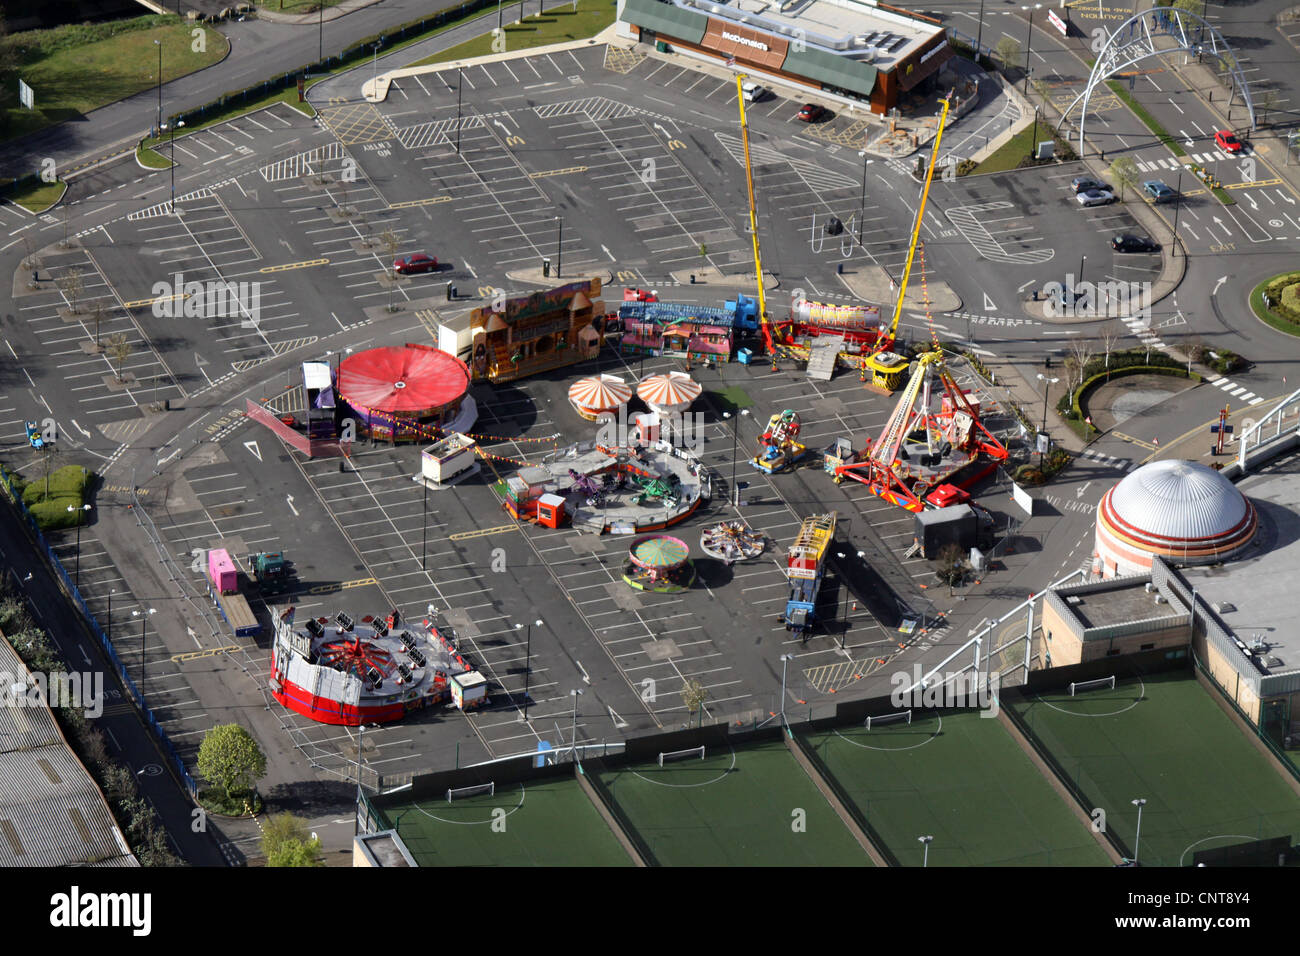 Vista aérea de un parque de atracciones en un aparcamiento a primera hora de la mañana Foto de stock